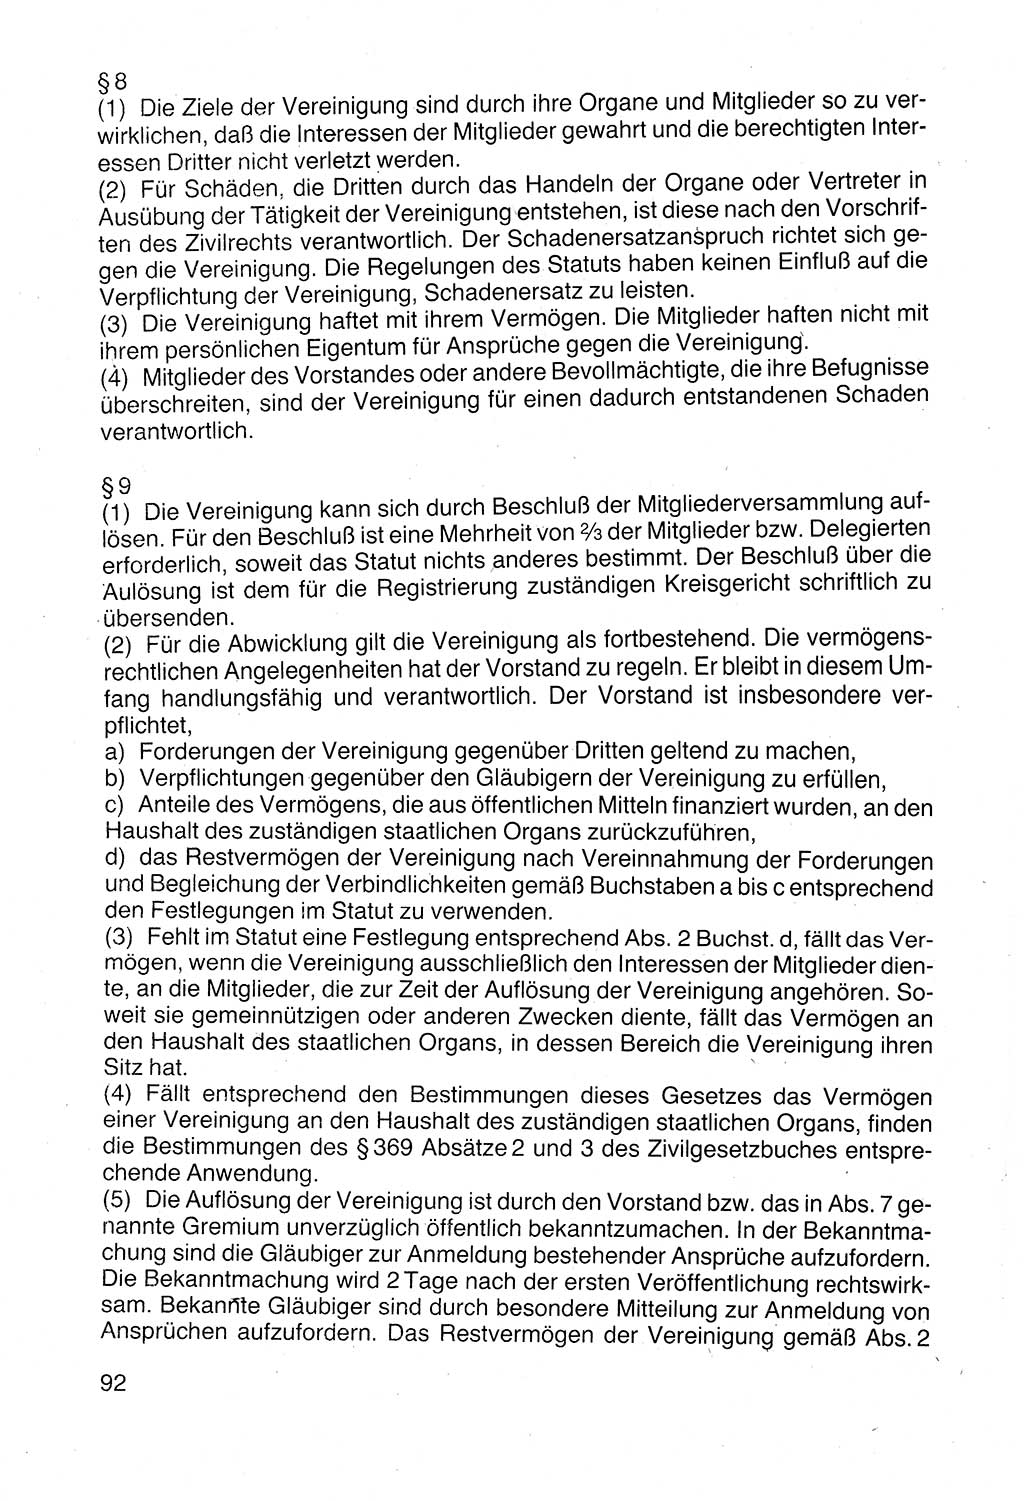 Politische Parteien und Bewegungen der DDR (Deutsche Demokratische Republik) über sich selbst 1990, Seite 92 (Pol. Part. Bew. DDR 1990, S. 92)